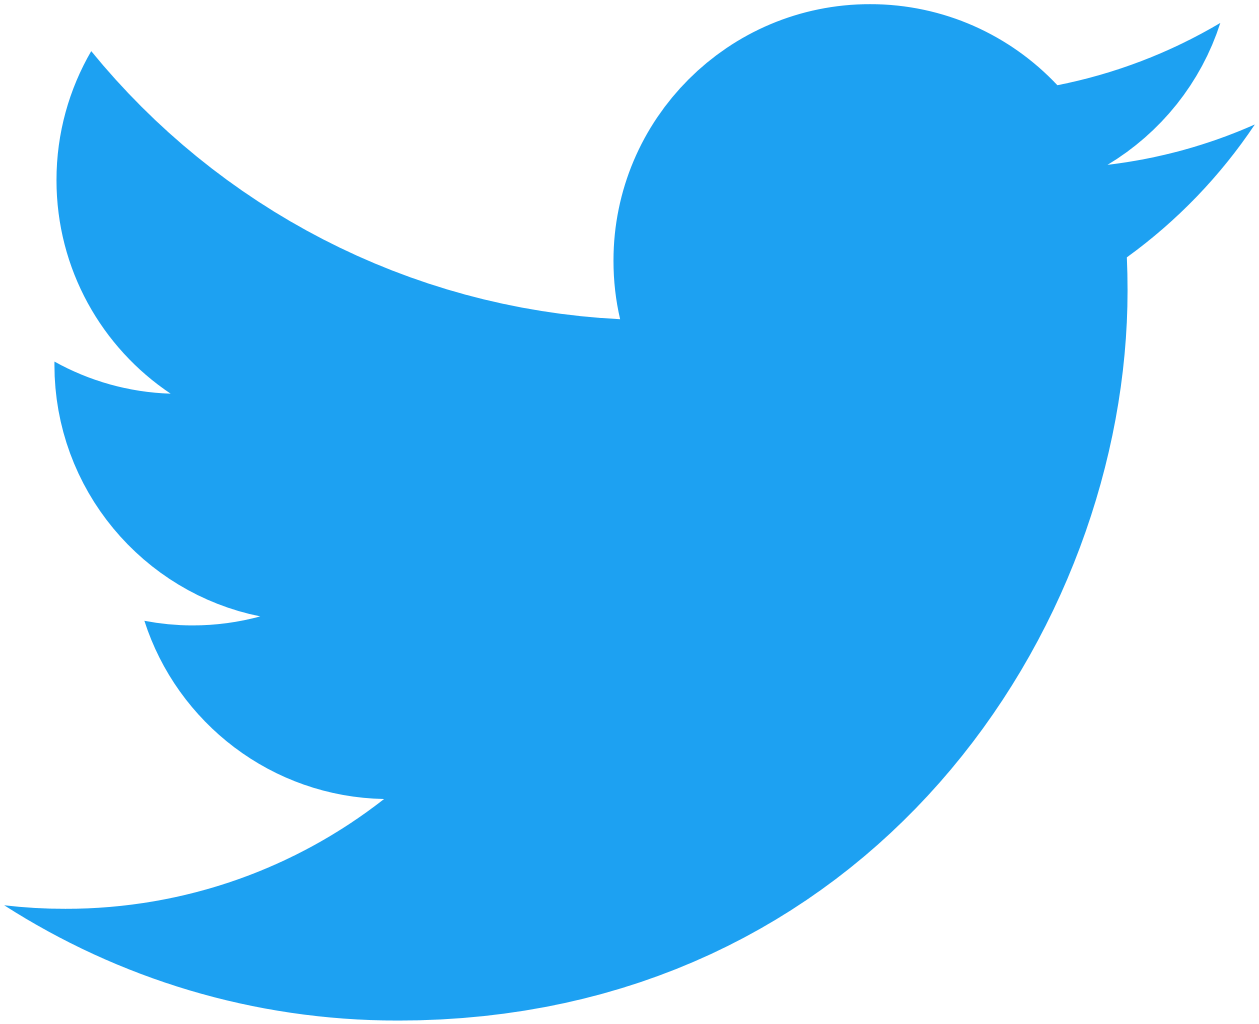 Twitter logo - bird